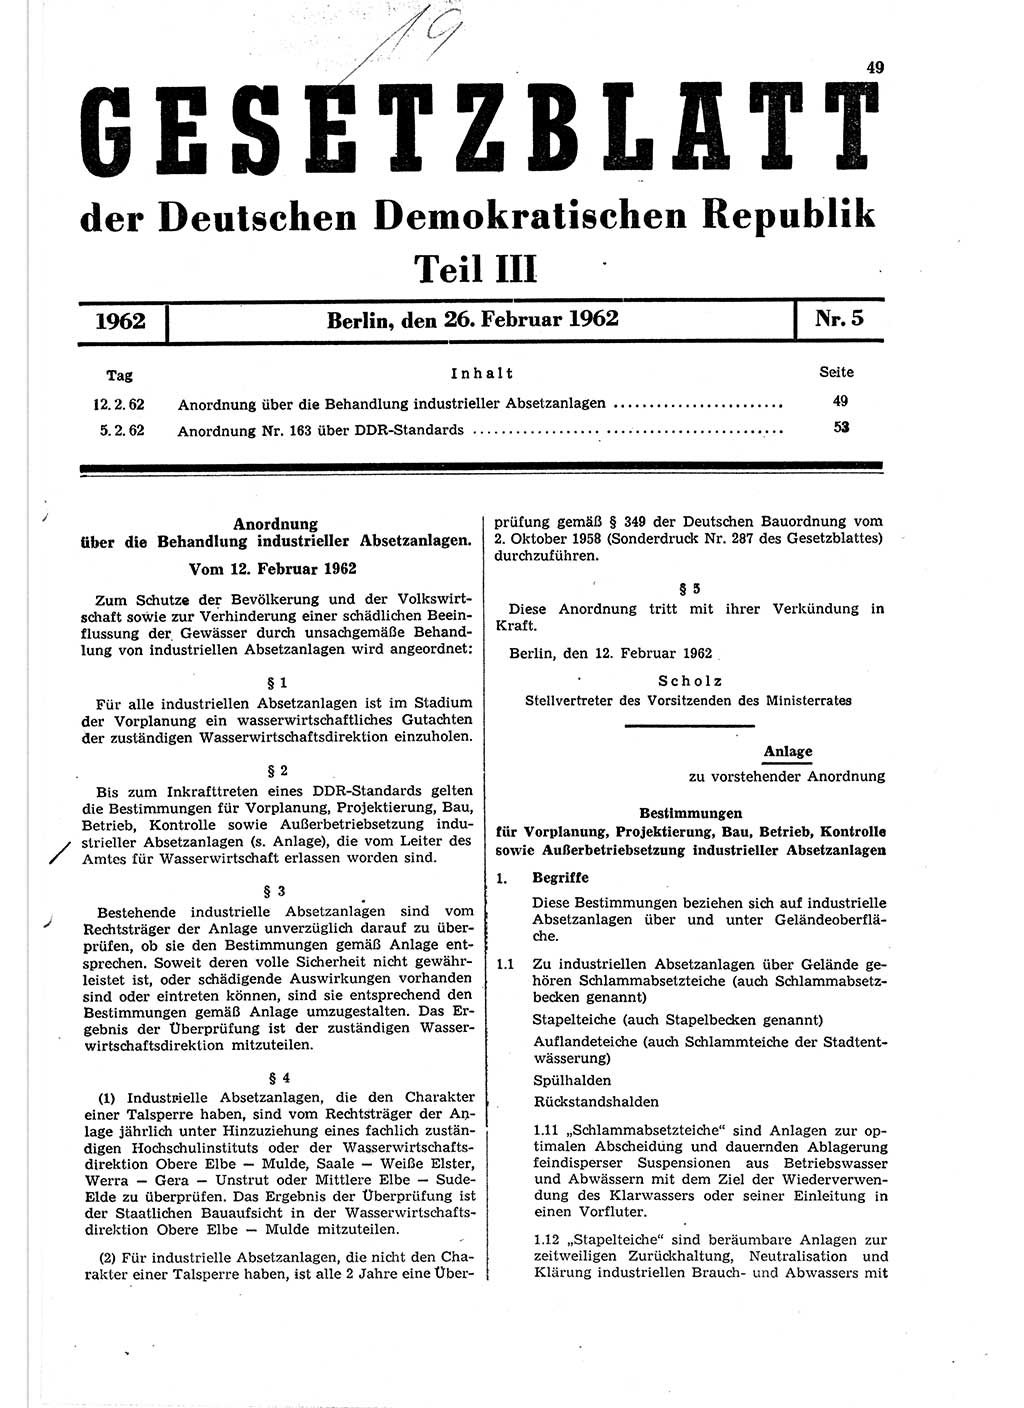 Gesetzblatt (GBl.) der Deutschen Demokratischen Republik (DDR) Teil ⅠⅠⅠ 1962, Seite 49 (GBl. DDR ⅠⅠⅠ 1962, S. 49)